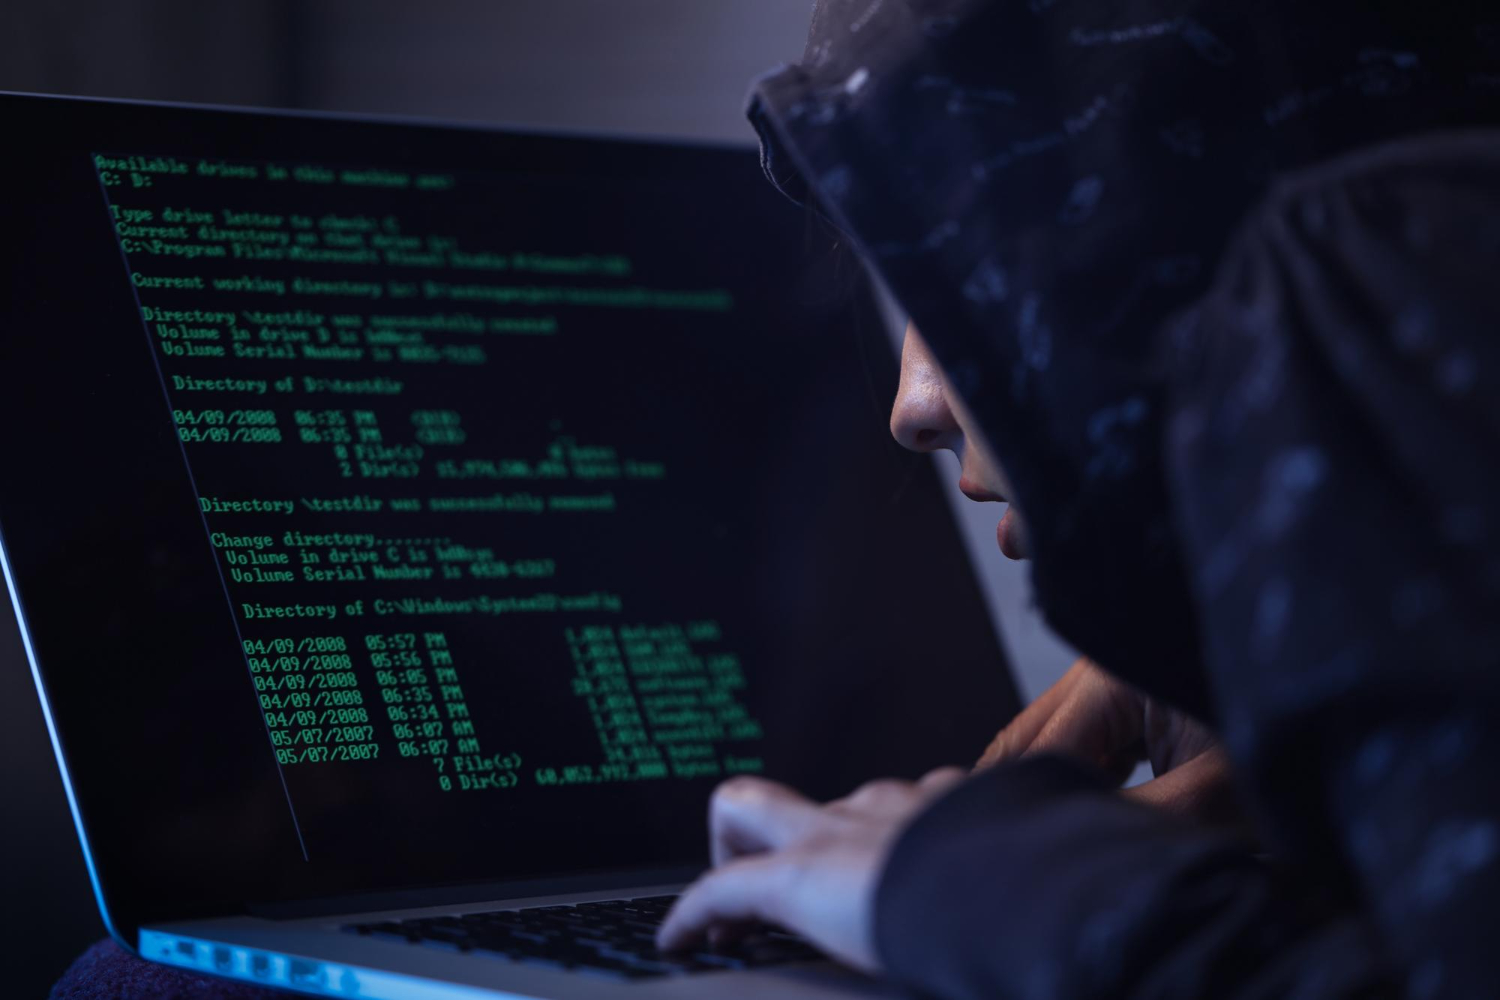 Grupo hacker do ransomware LockBit promete ser mais agressivo nos próximos ataques